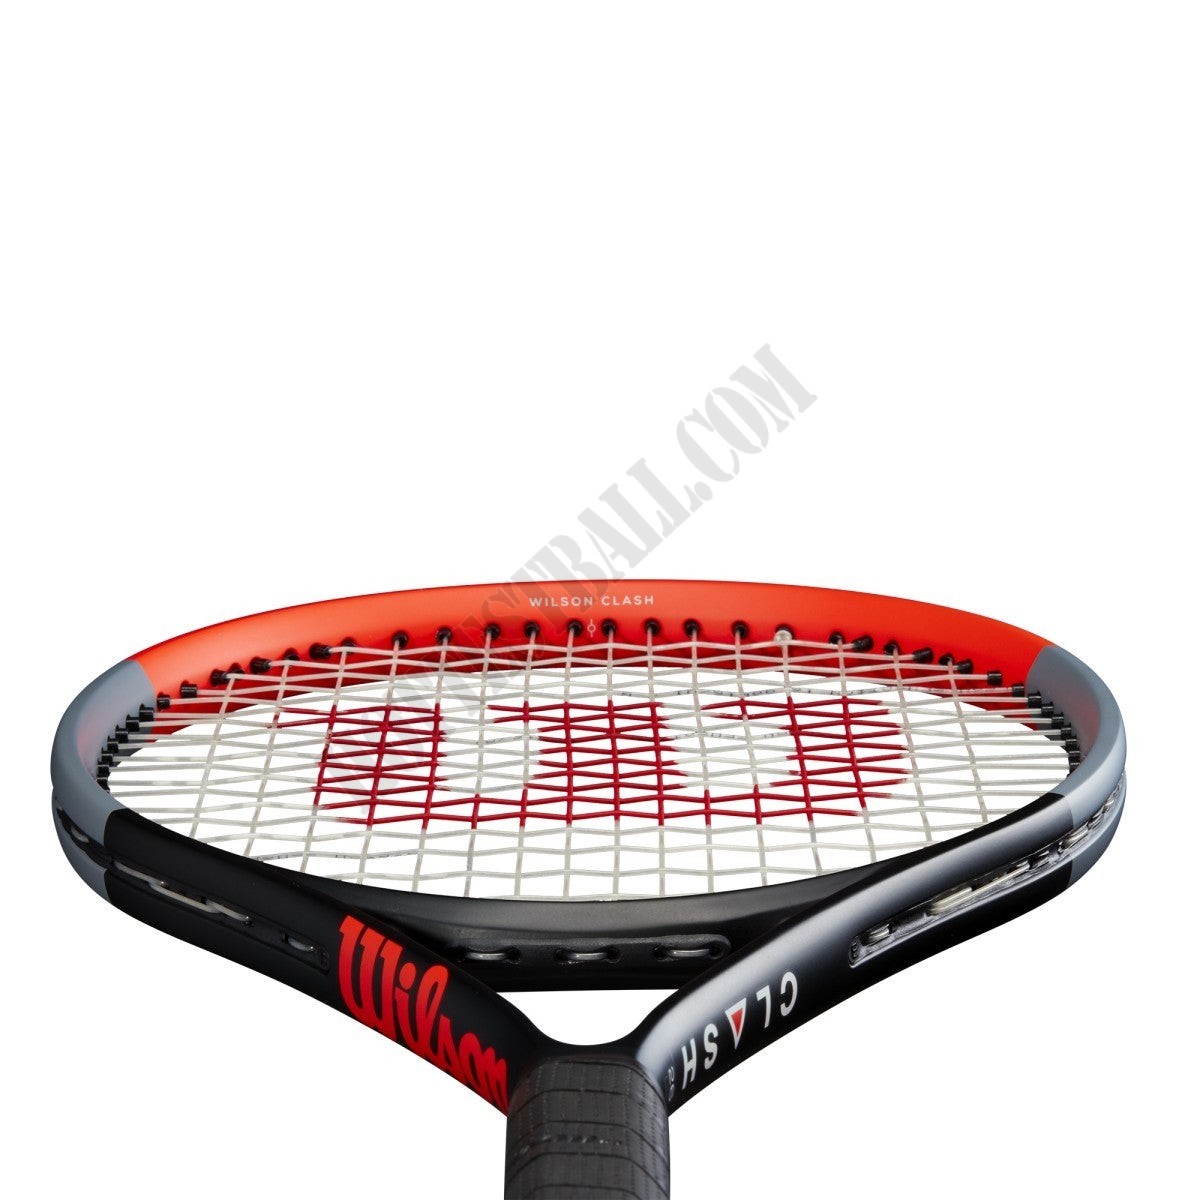 Clash 26 Tennis Racket - Wilson Discount Store - -3